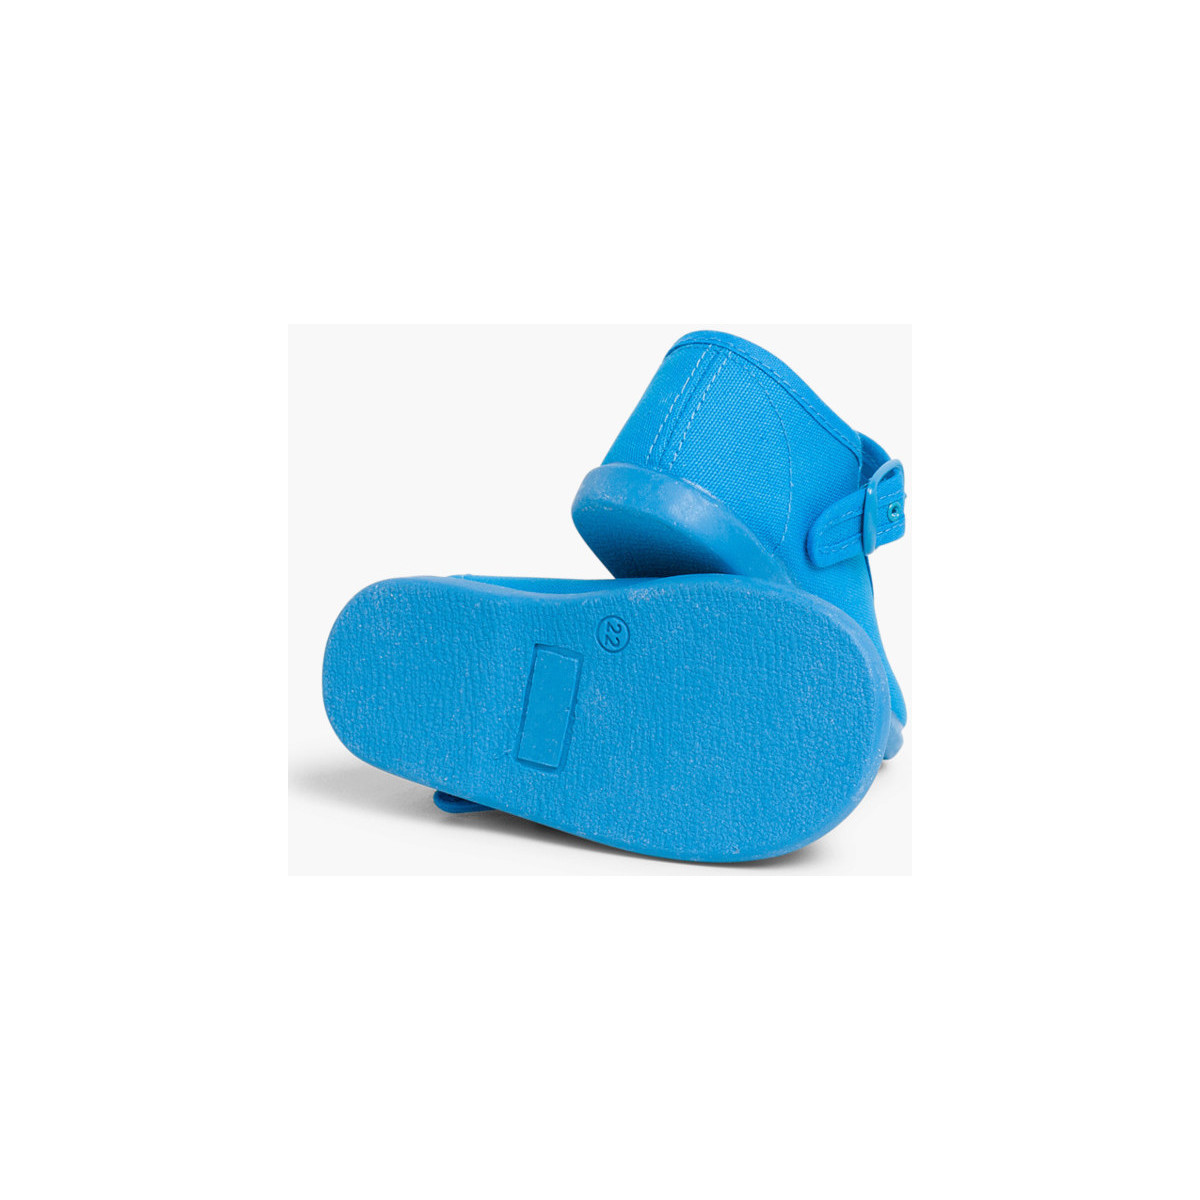 Pisamonas Bleu Chaussures en Toile avec Fermeture à boucle ZoUbC3Li